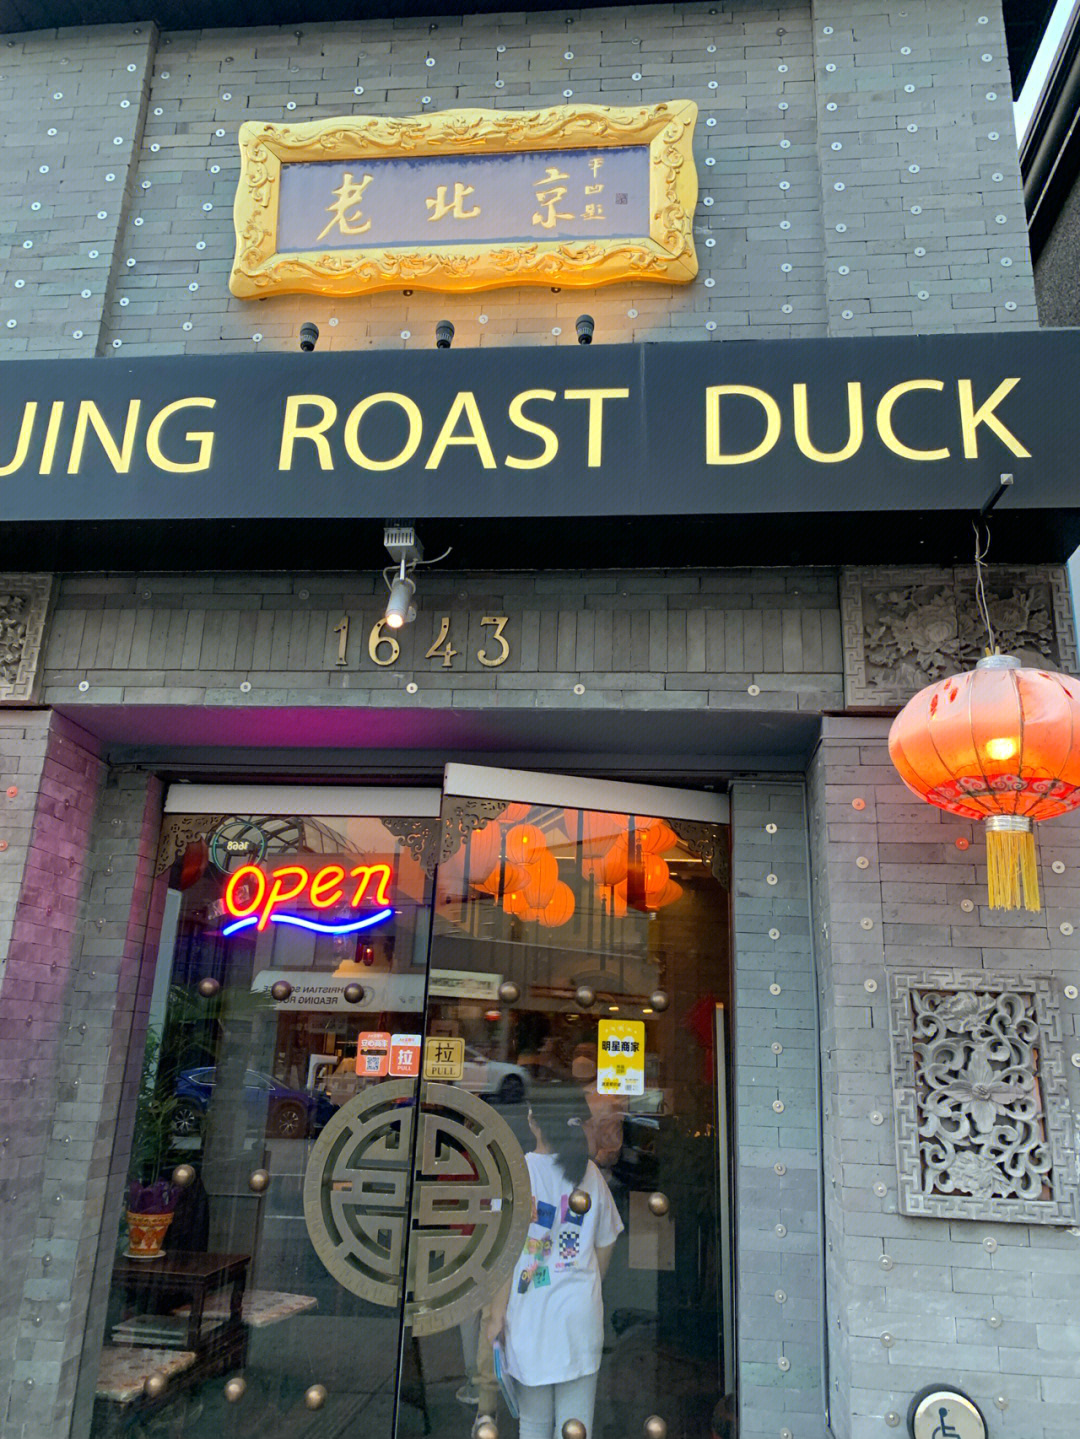 老门楼北京烤鸭图片